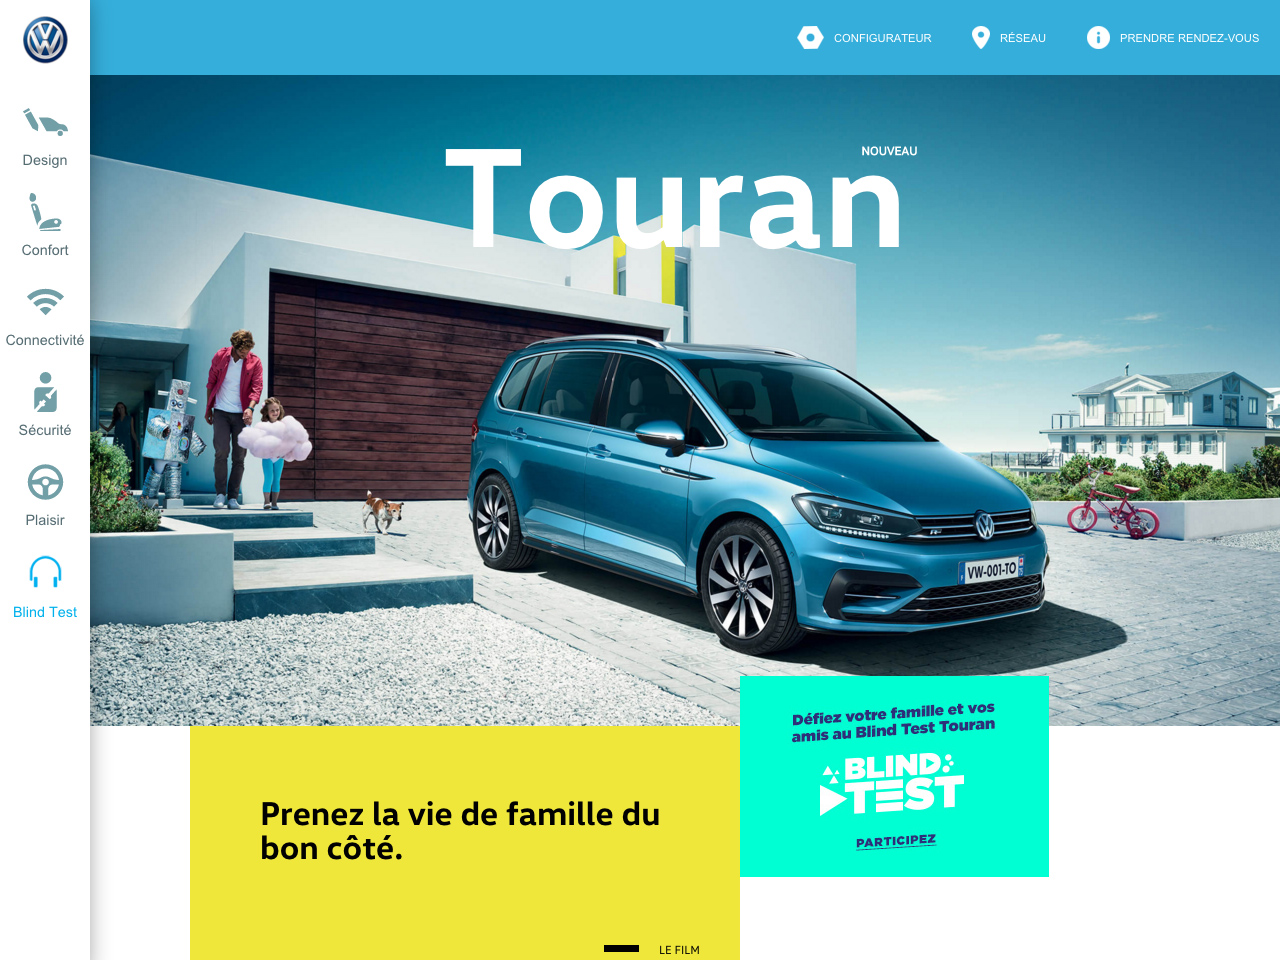 Volkswagen – Touran